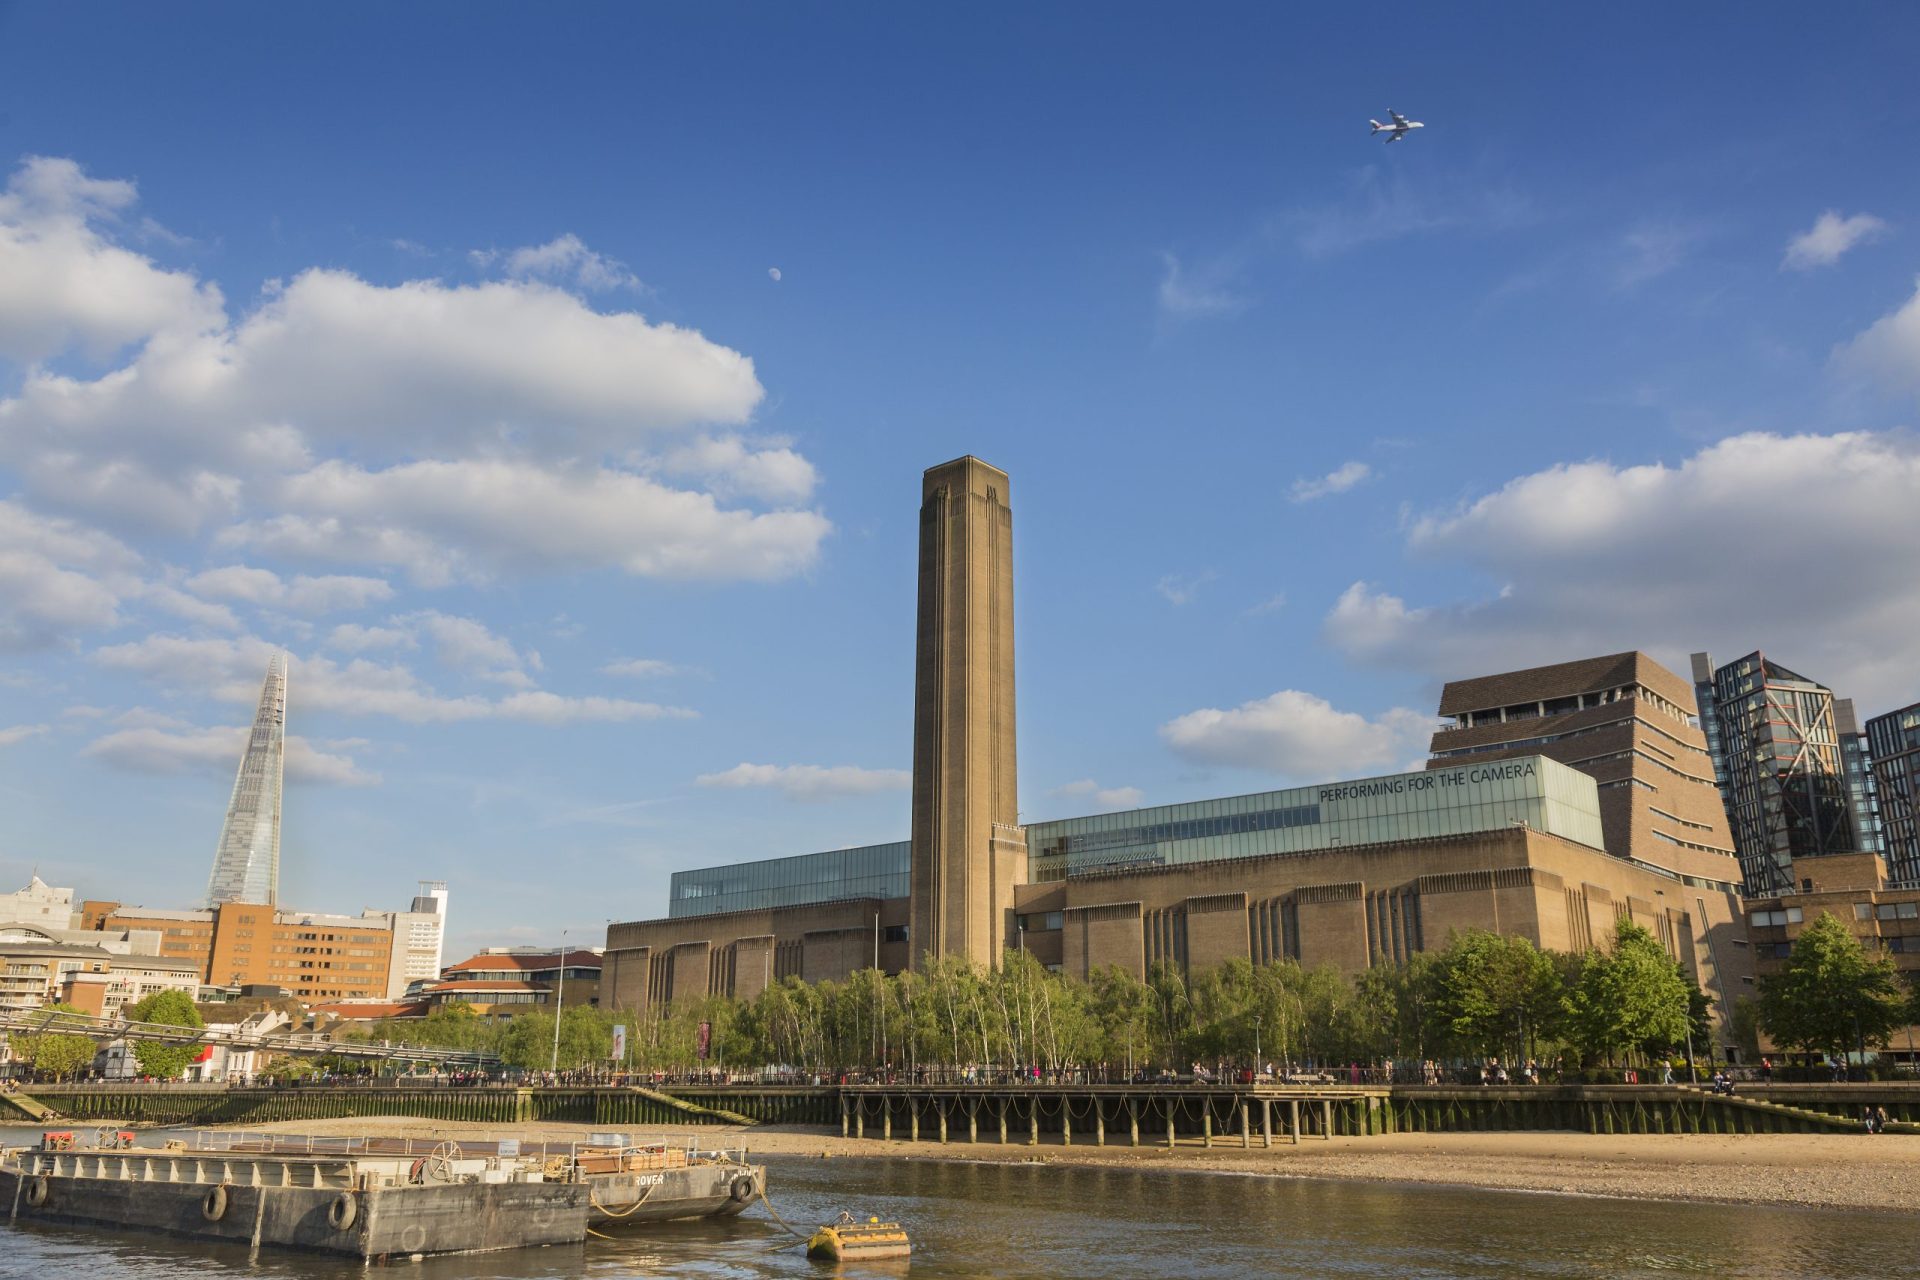 Jovem de 17 anos acusado de tentativa de homicídio após empurrar criança do 10.º andar da galeria Tate Modern